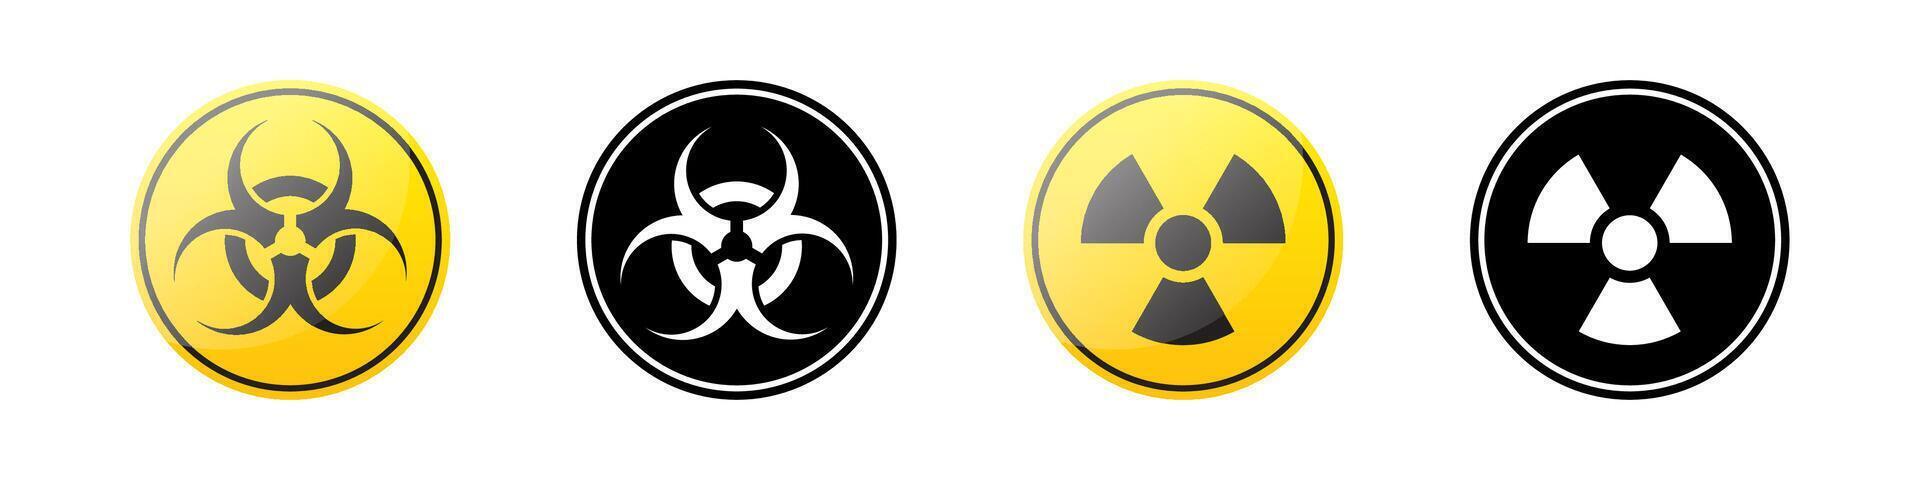 radiación simbolos radiación peligro. radioactivo iconos vector